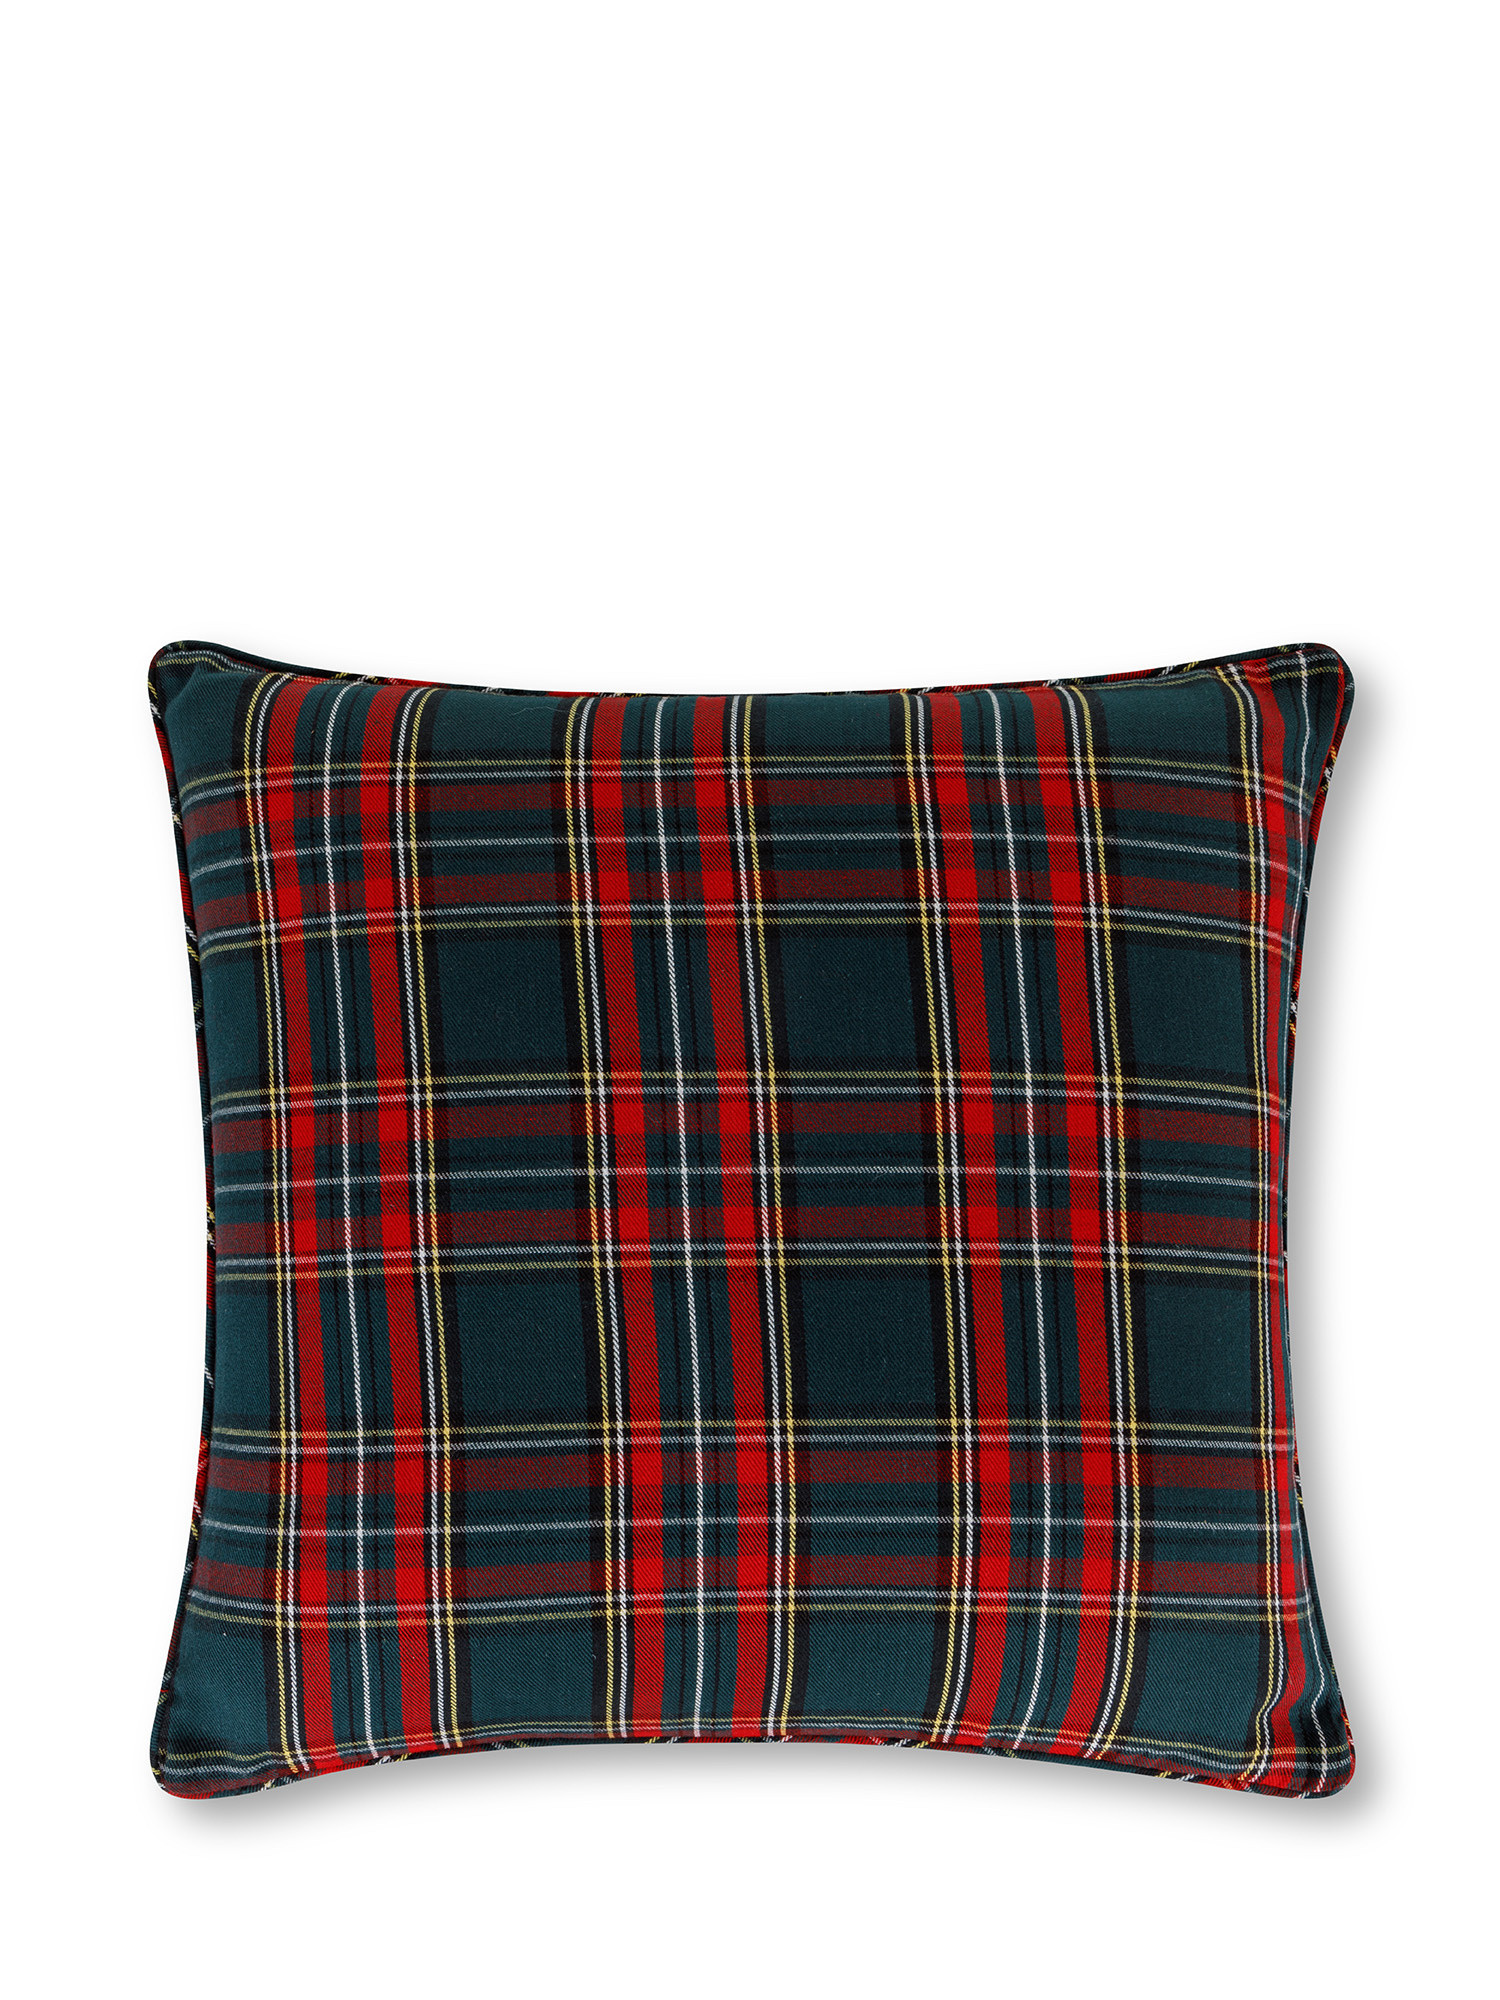 Tartan cushion 45x45 cm, Green, large image number 0